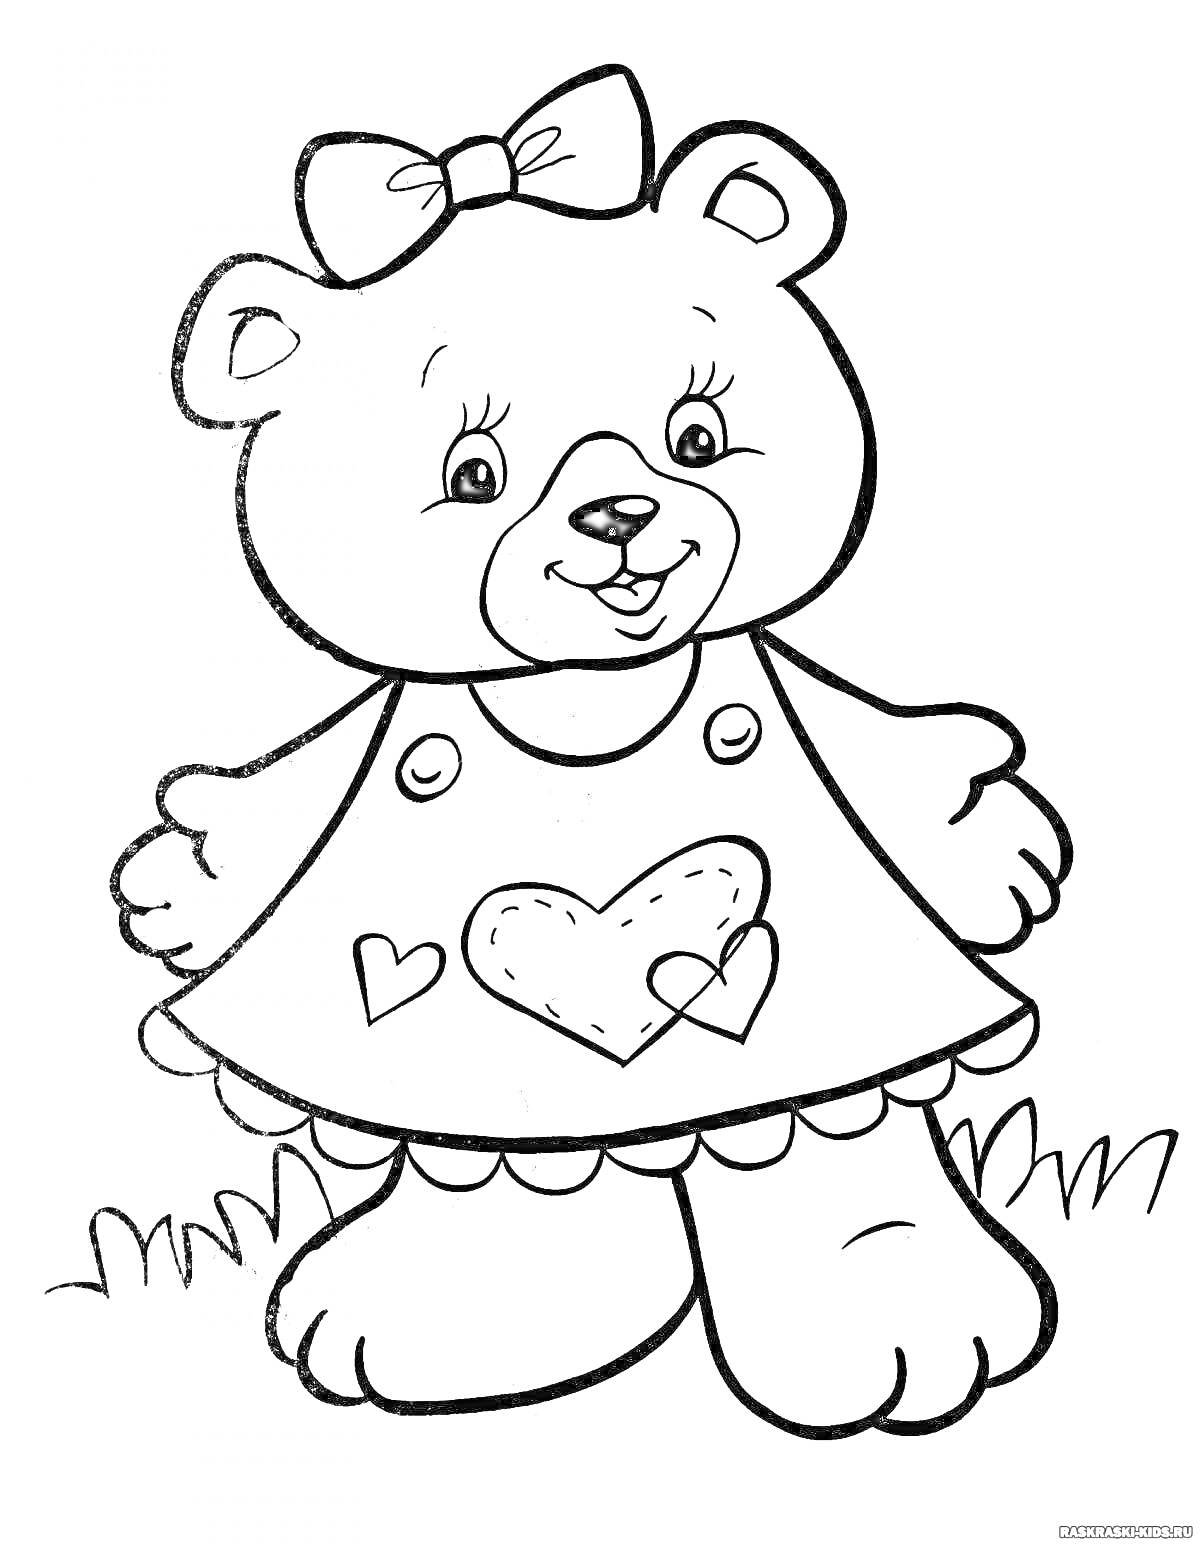 Раскраска Медвежонок в платье с сердечками